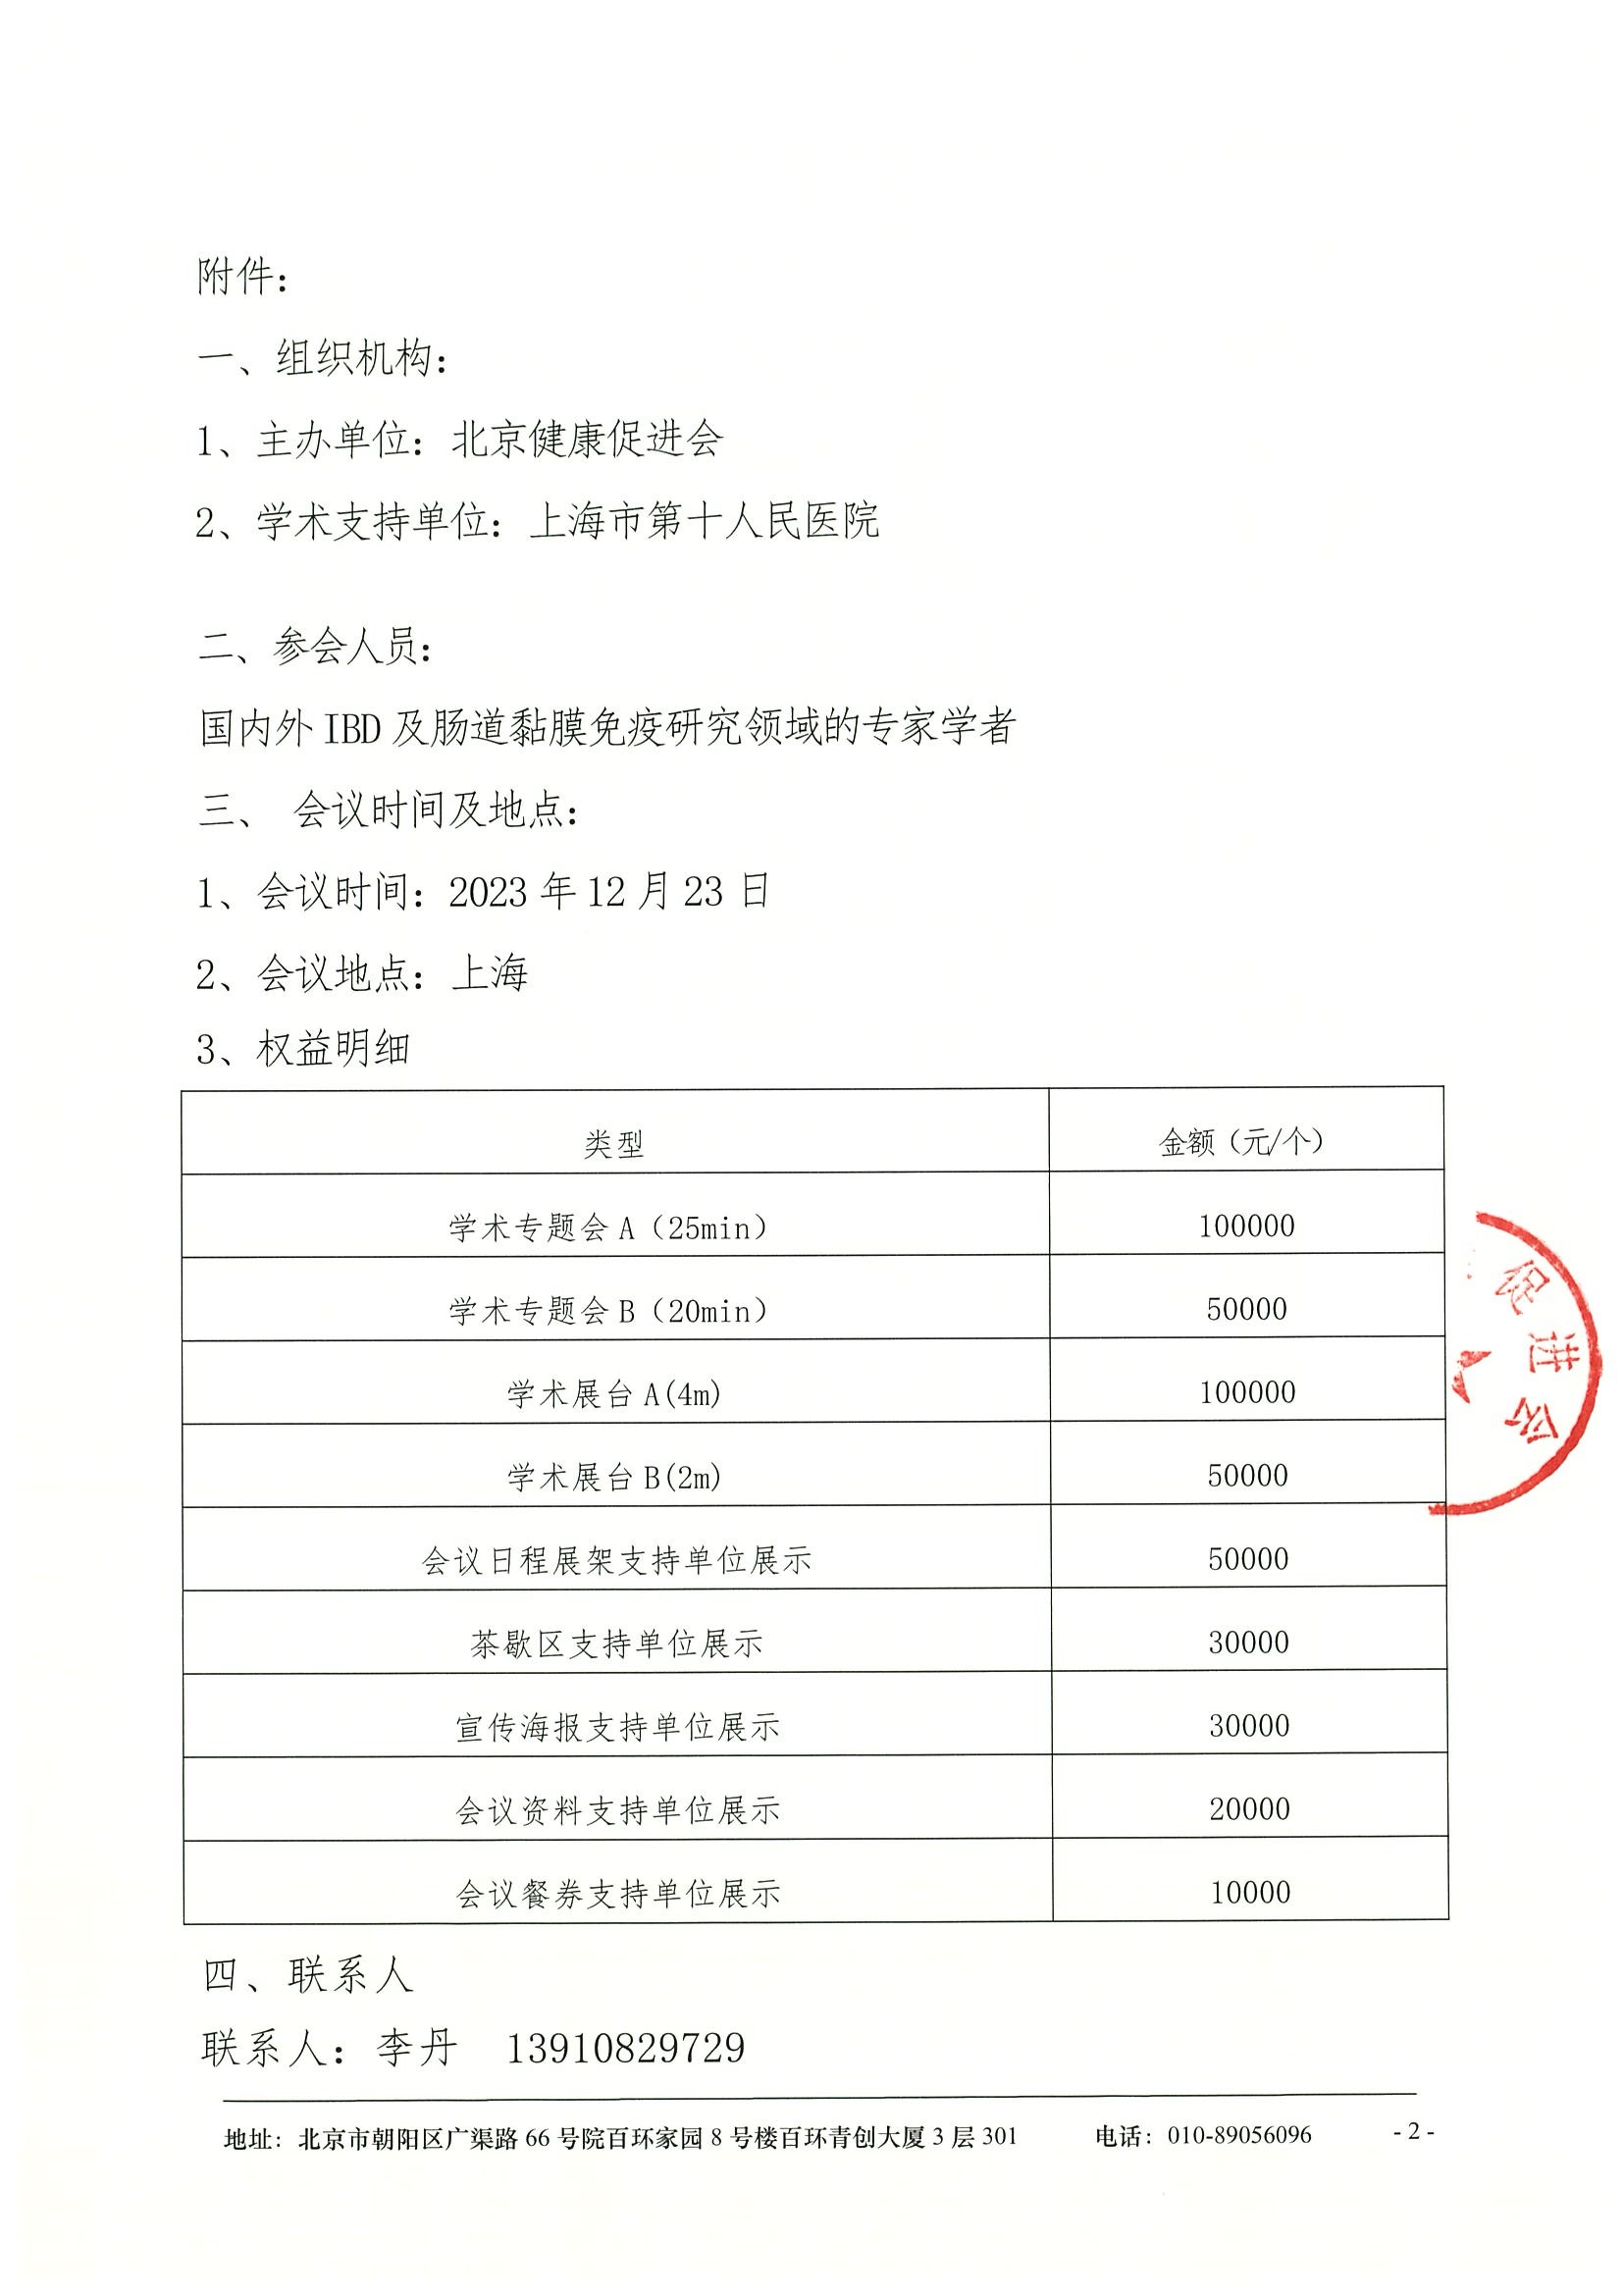 上海IBD研究进展研讨会-招商函 2.jpeg